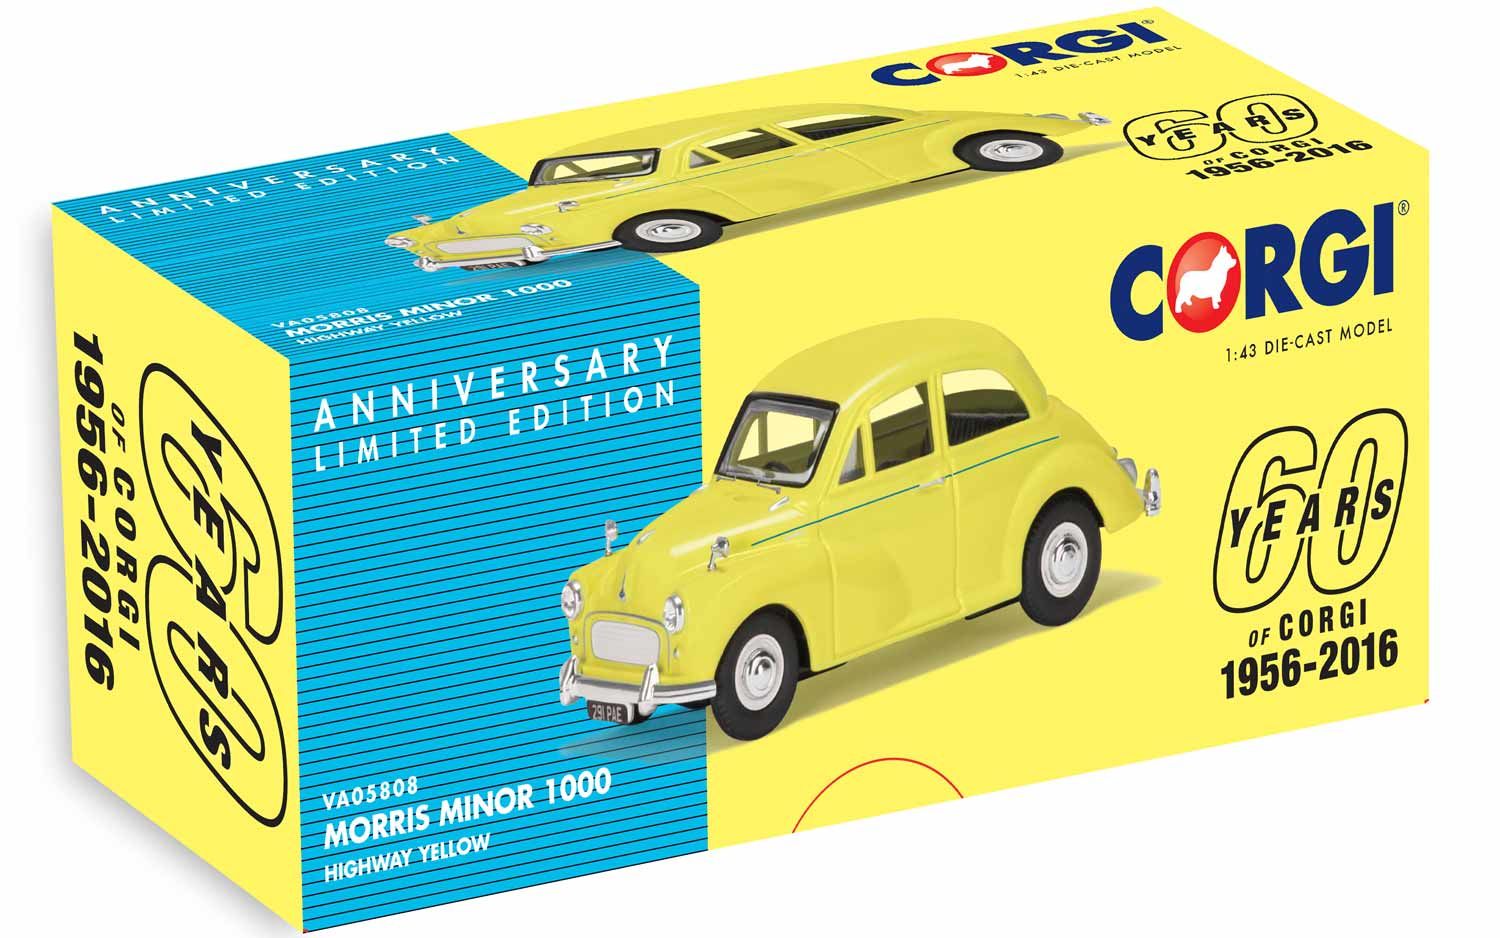 VA05808 Morris Minor 1000, Highway Yellow - 60th Anniversary 